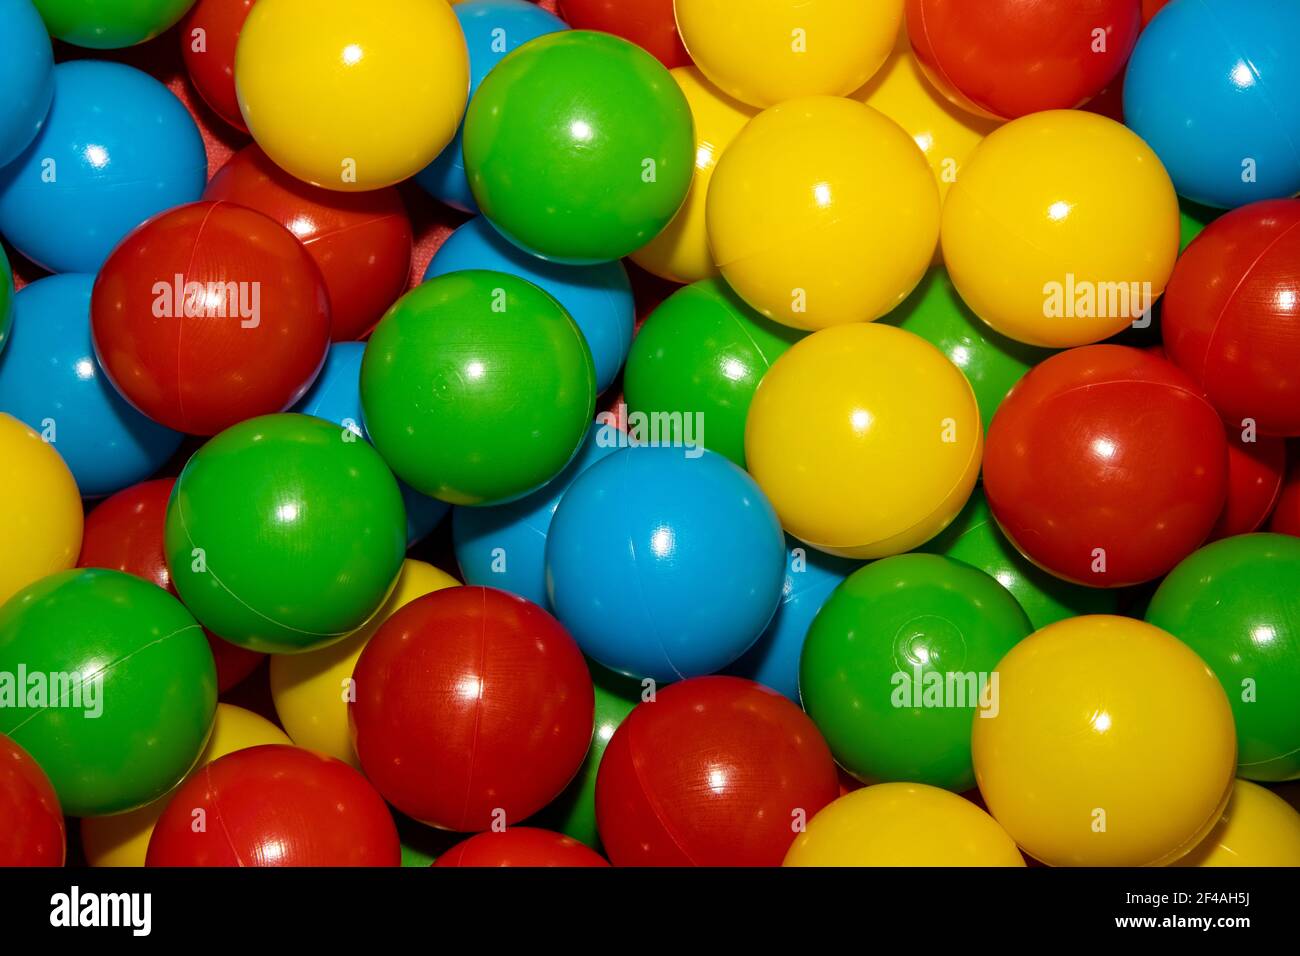 Eine Nahaufnahme eines Bündels von bunten Plastikkugeln In einem  Kinderball-Pool-Grube Stockfotografie - Alamy